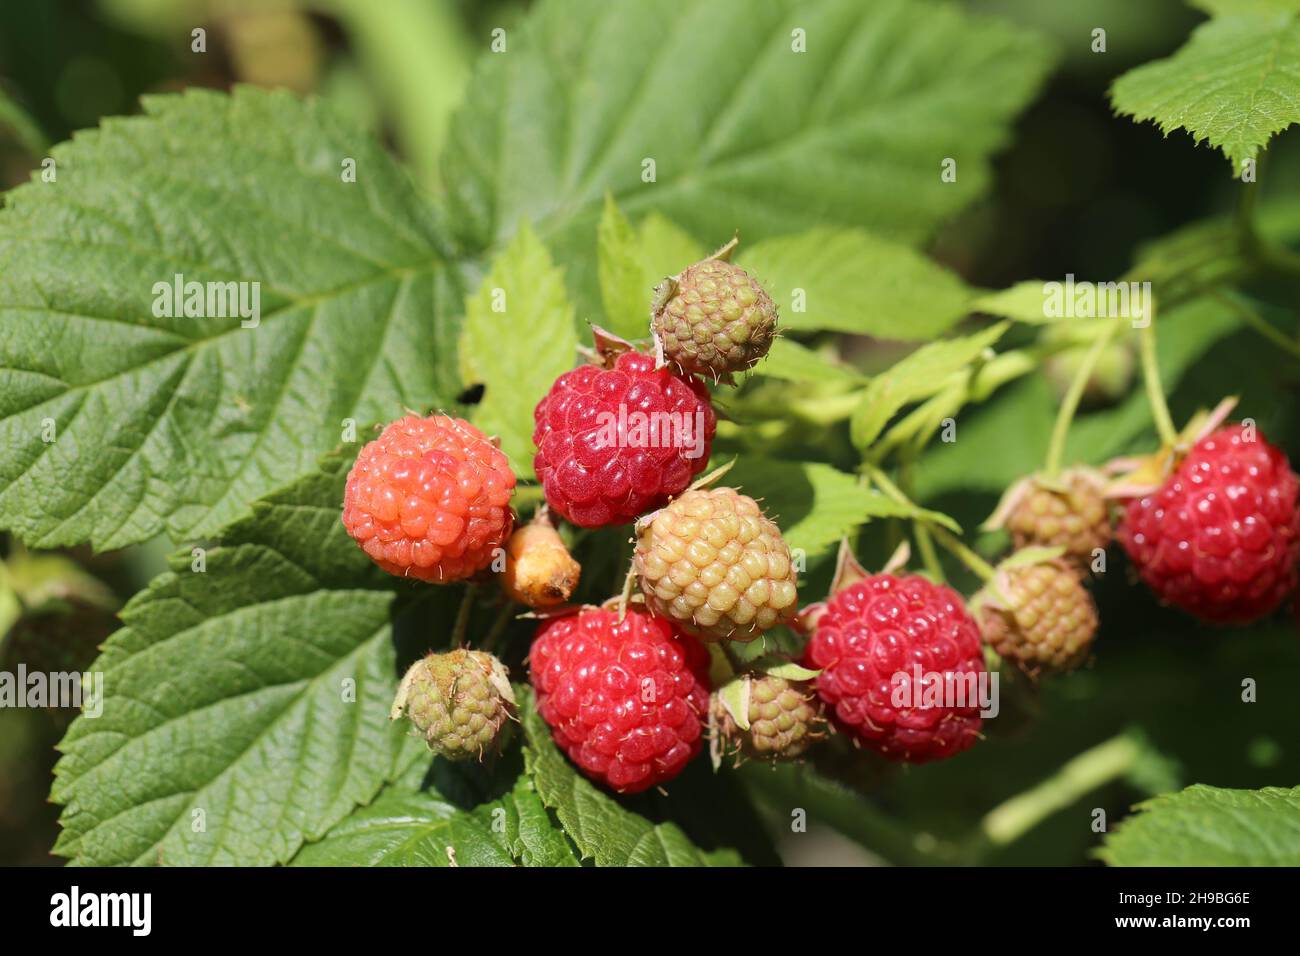 fresh raspberry, Himbeeren Stock Photo